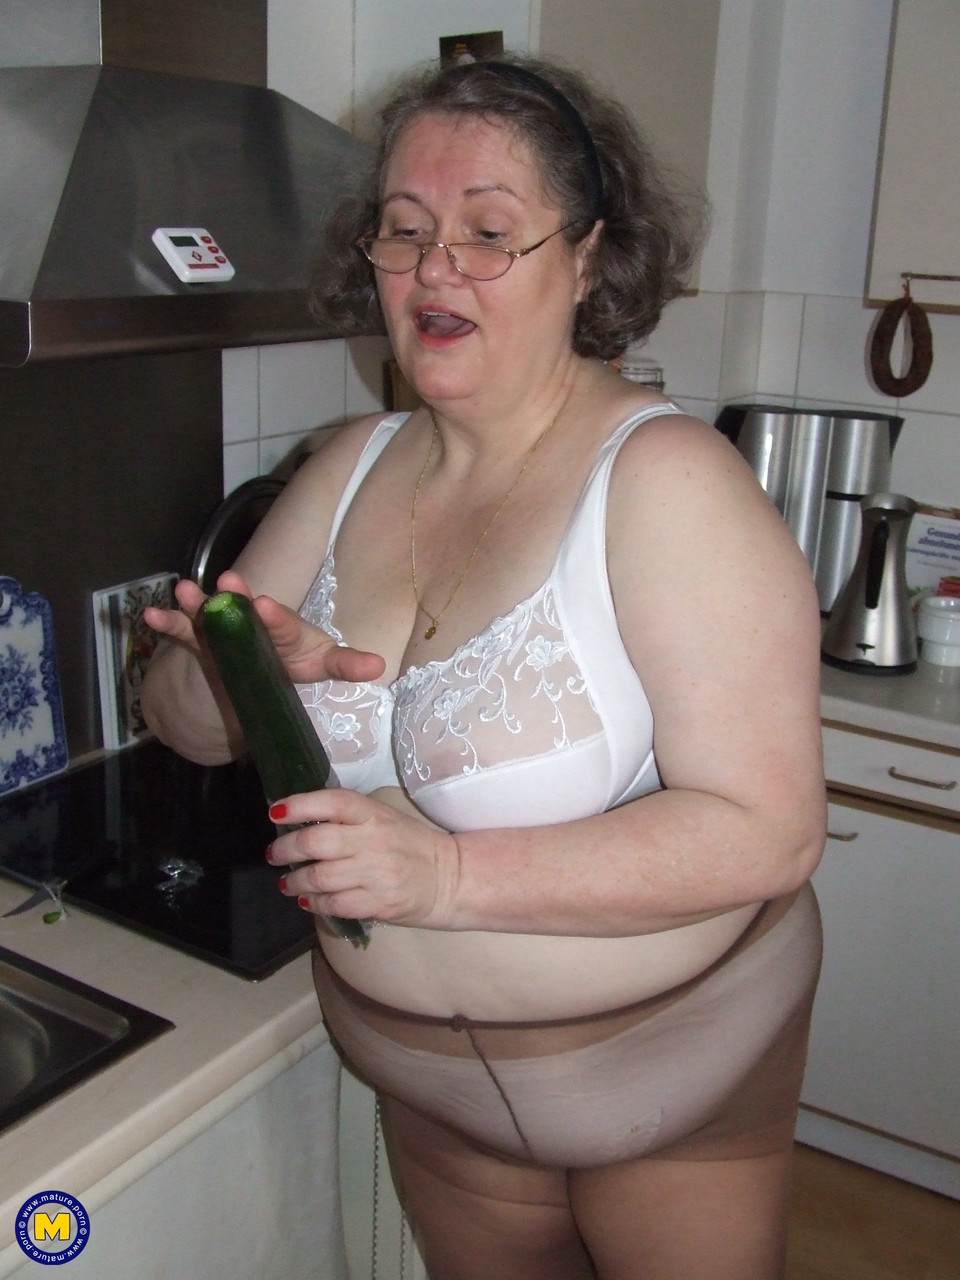 Fat mature housewife Birgid masturbates with a cucumber in the kitchen foto porno #423883219 | Mature NL Pics, Birgid, Granny, porno mobile